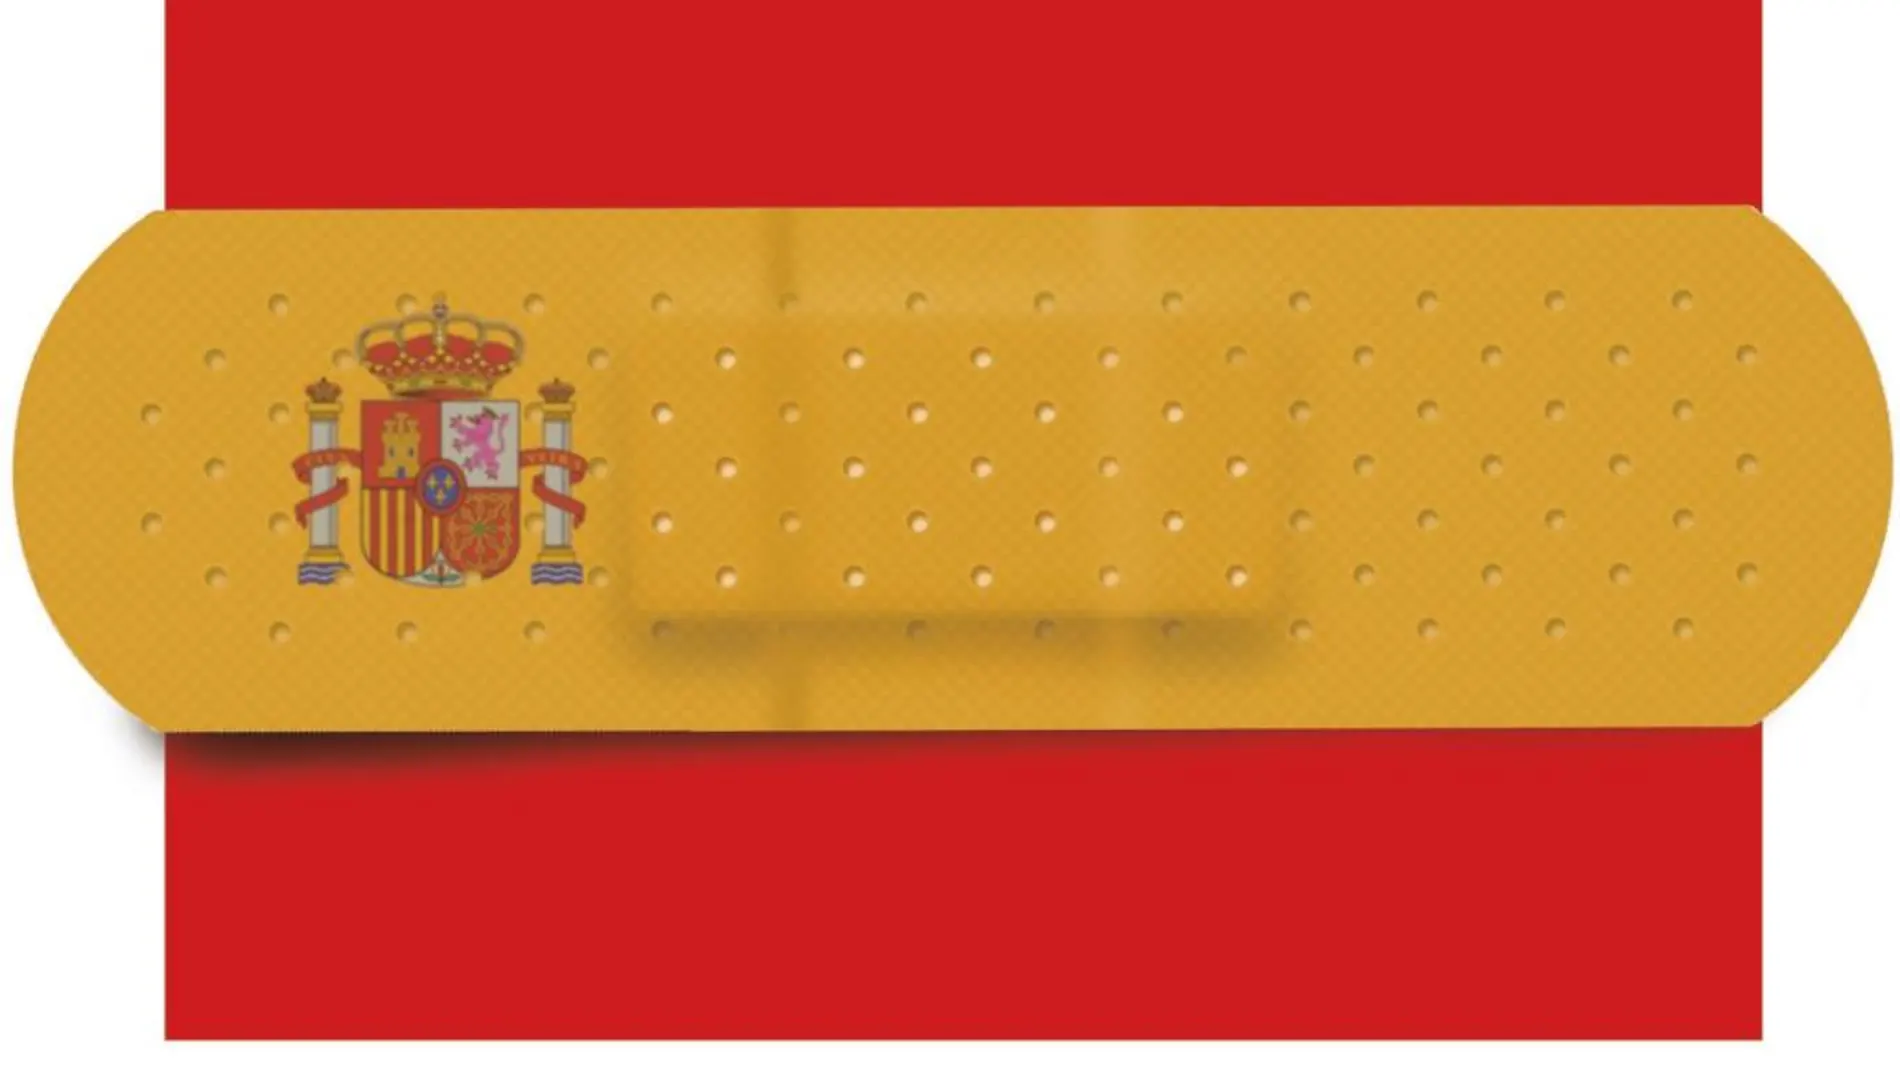 Elogio y defensa de España